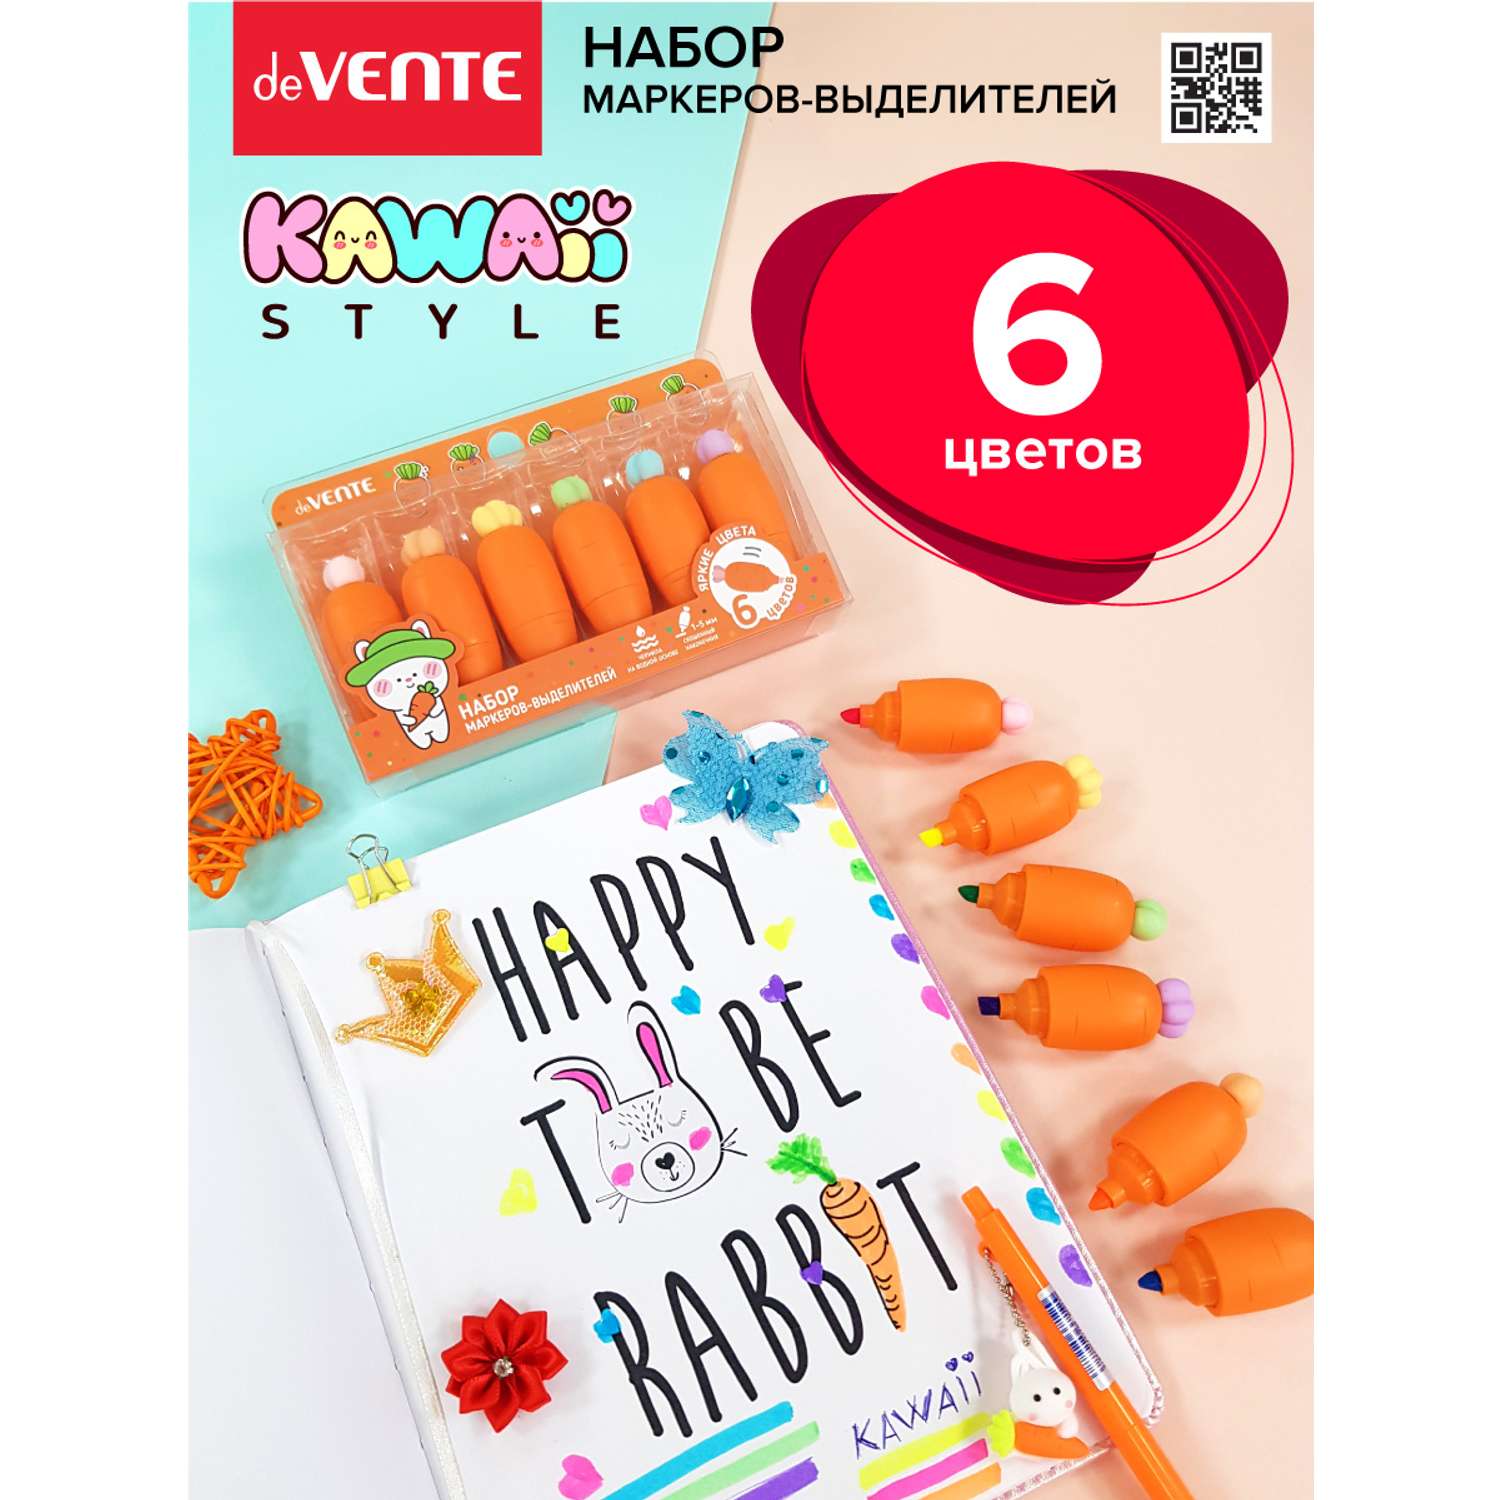 Набор маркеров deVENTE выделителей Kawaii Carrot. 6 цветов - фото 11